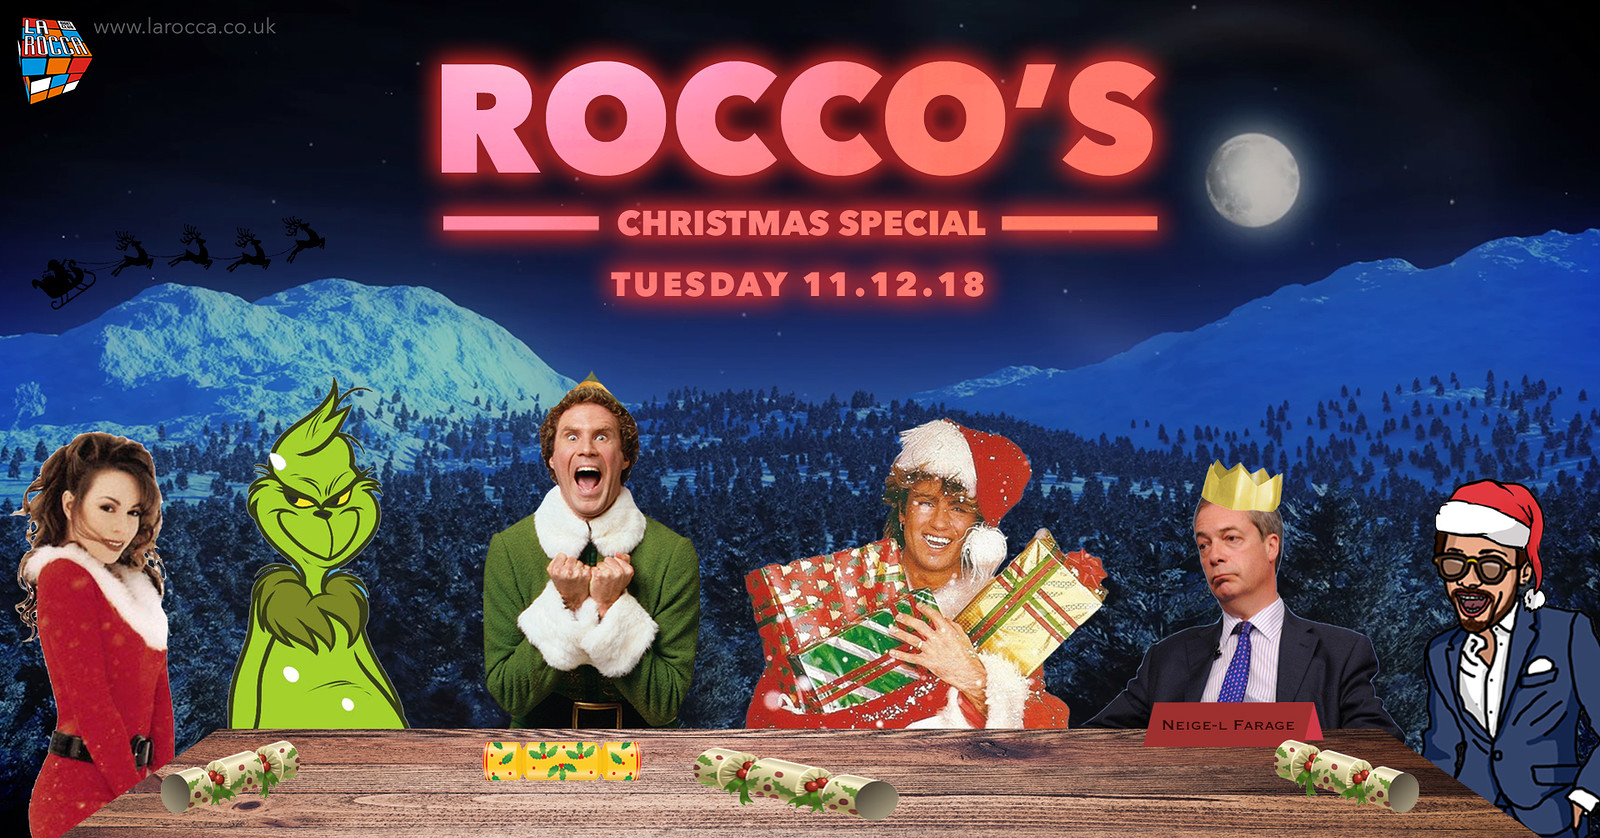 Rocco’s: Christmas Special at La Rocca